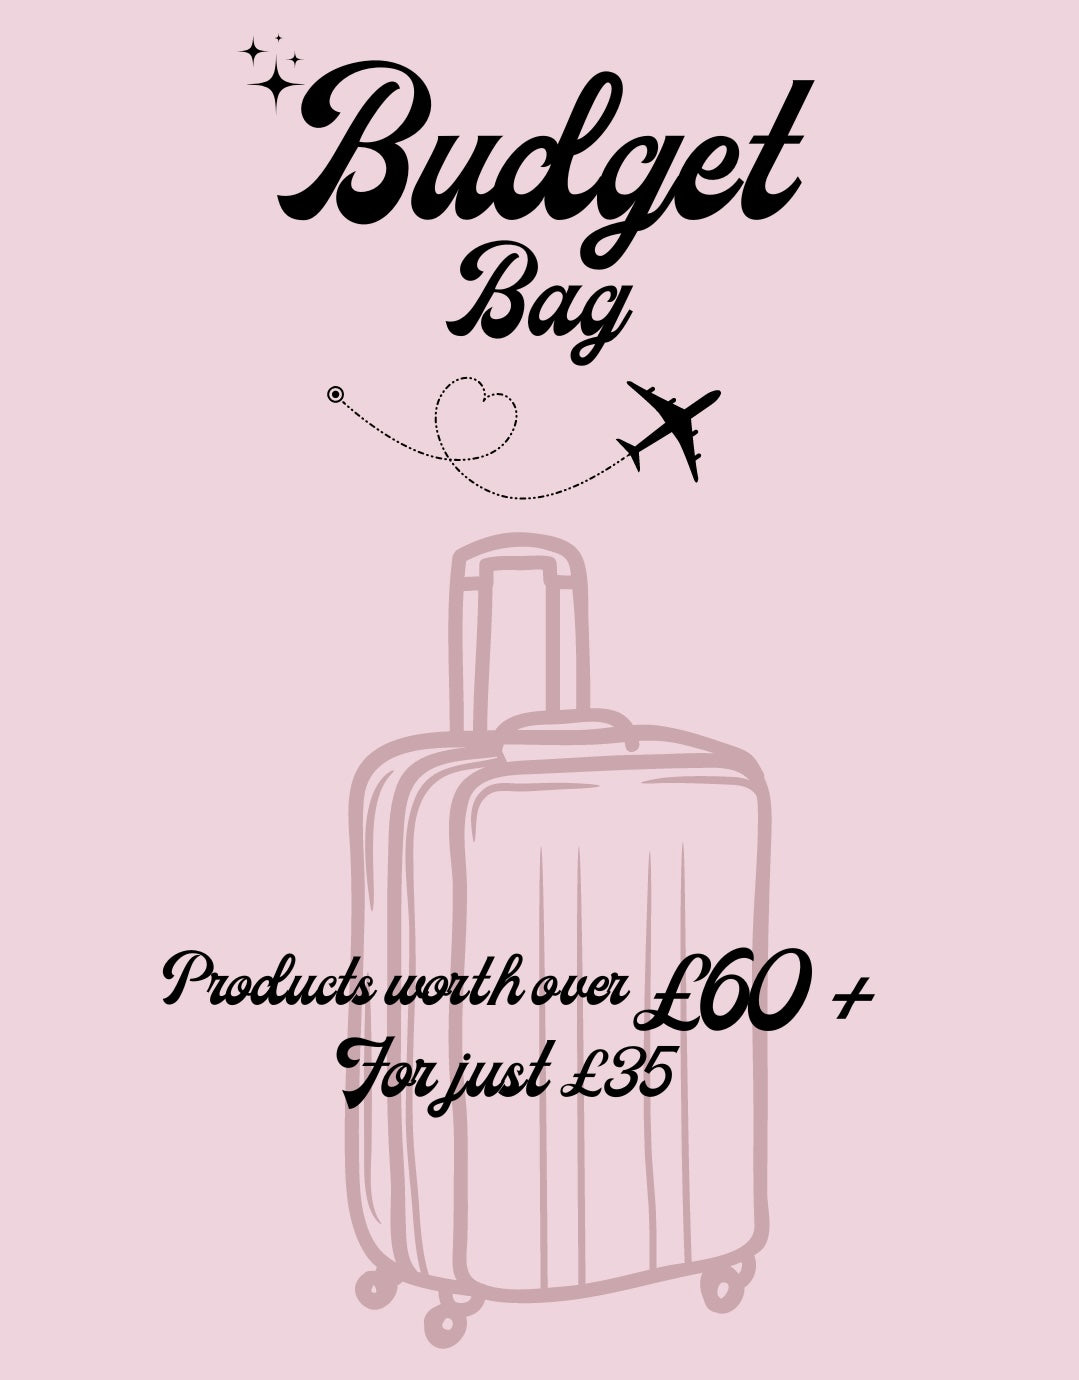 Budget Bag